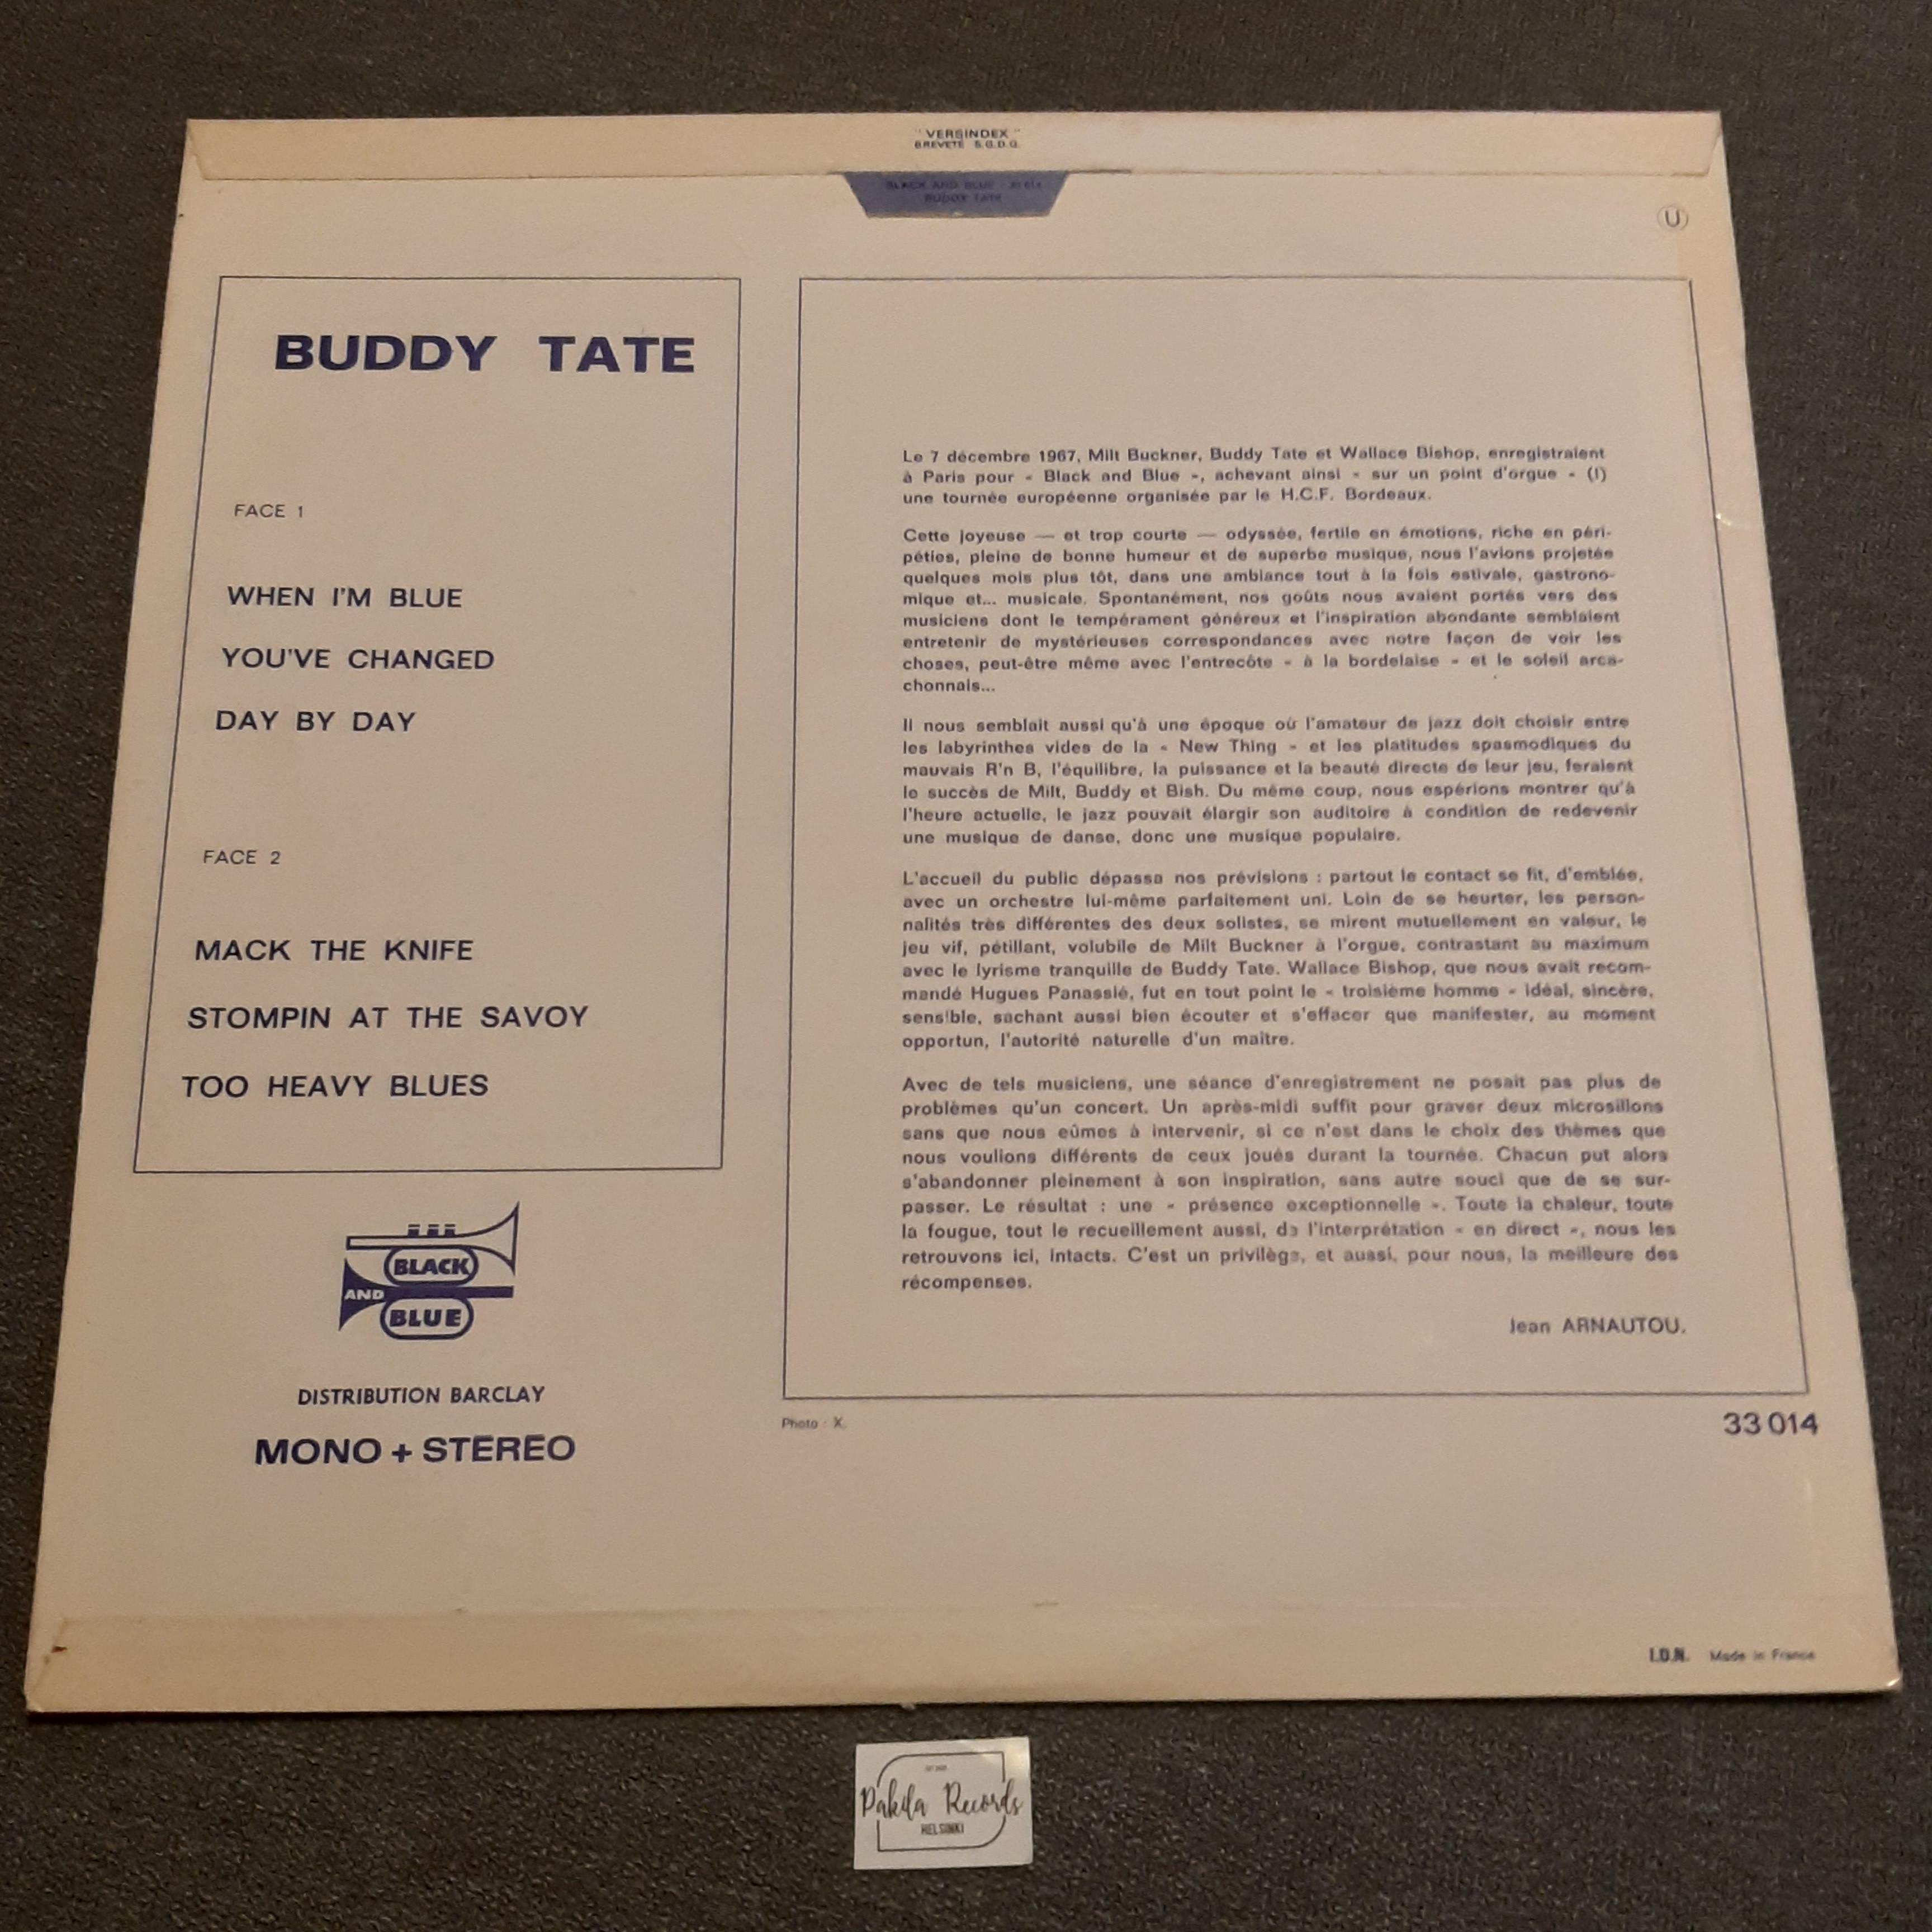 Buddy Tate Featuring Milt Buckner - s/t - LP (käytetty)